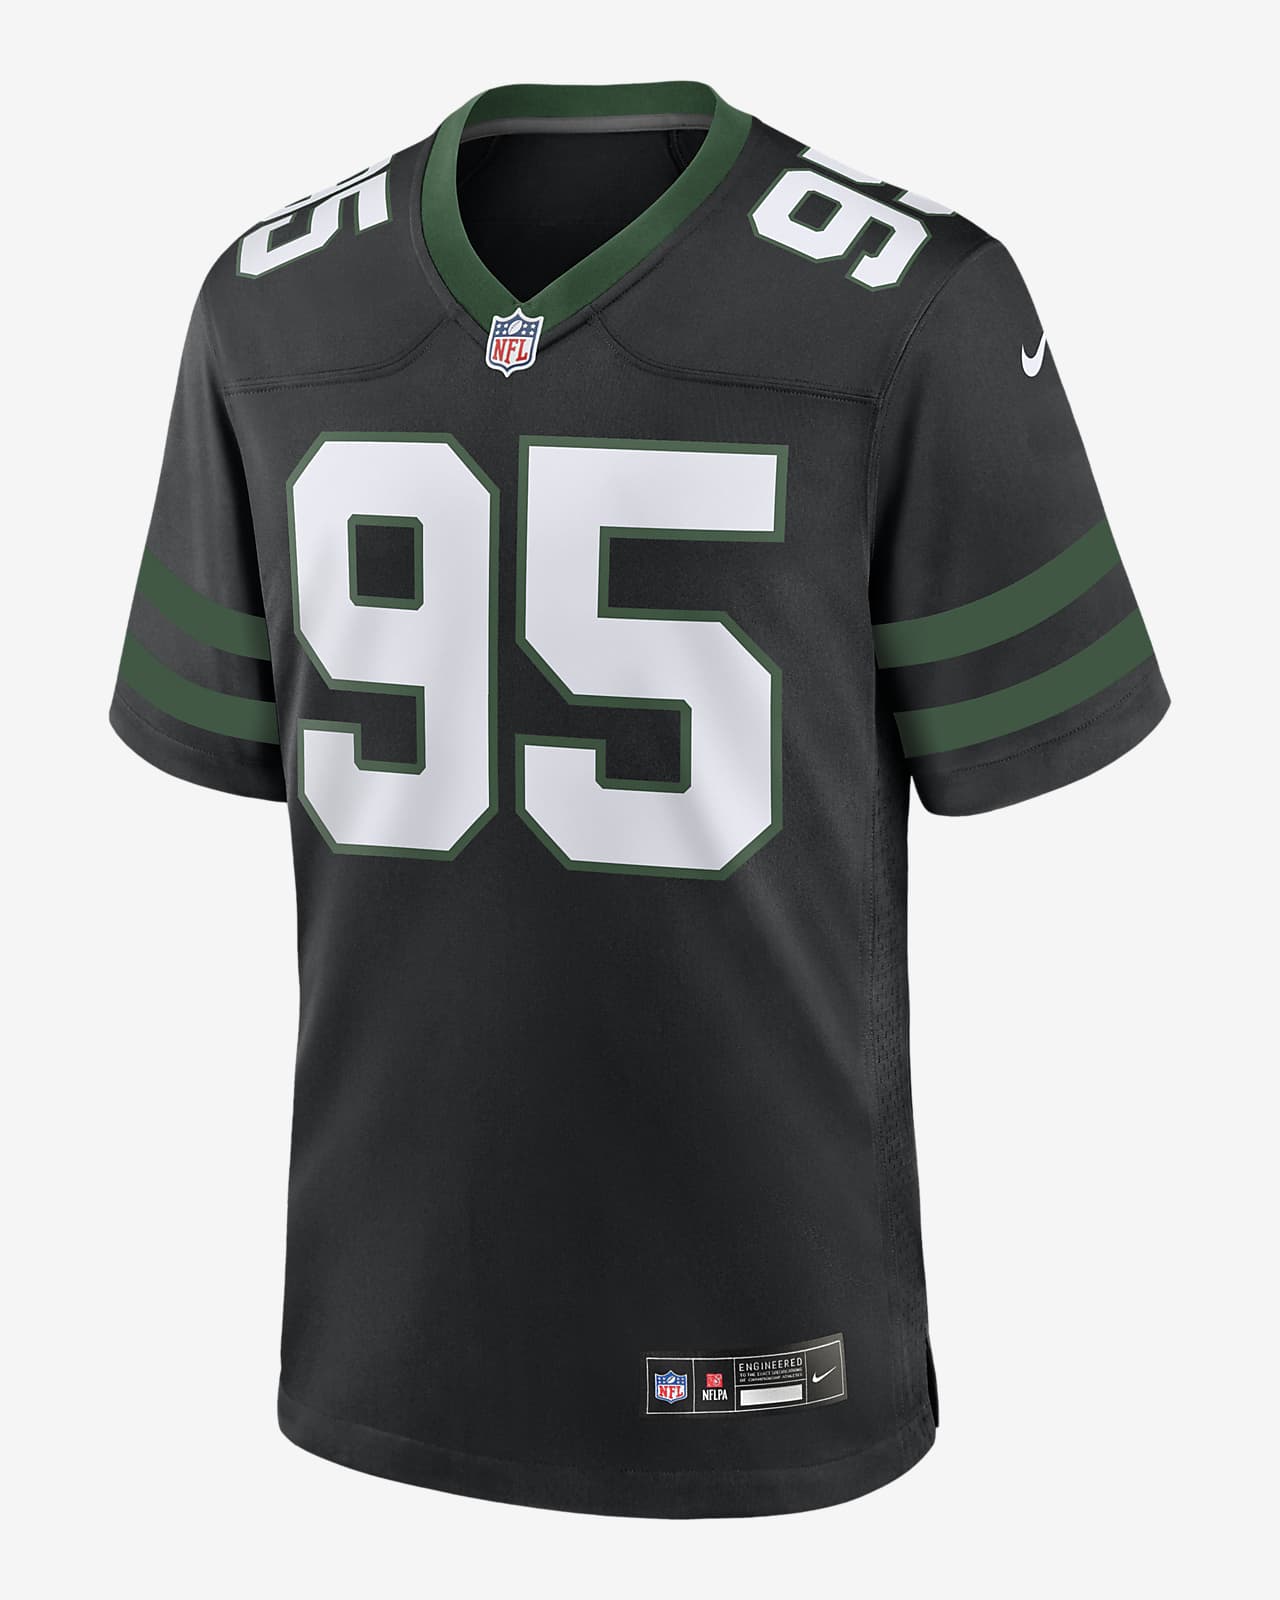 Jersey de fútbol americano Nike de la NFL Game para hombre Quinnen Williams New York Jets